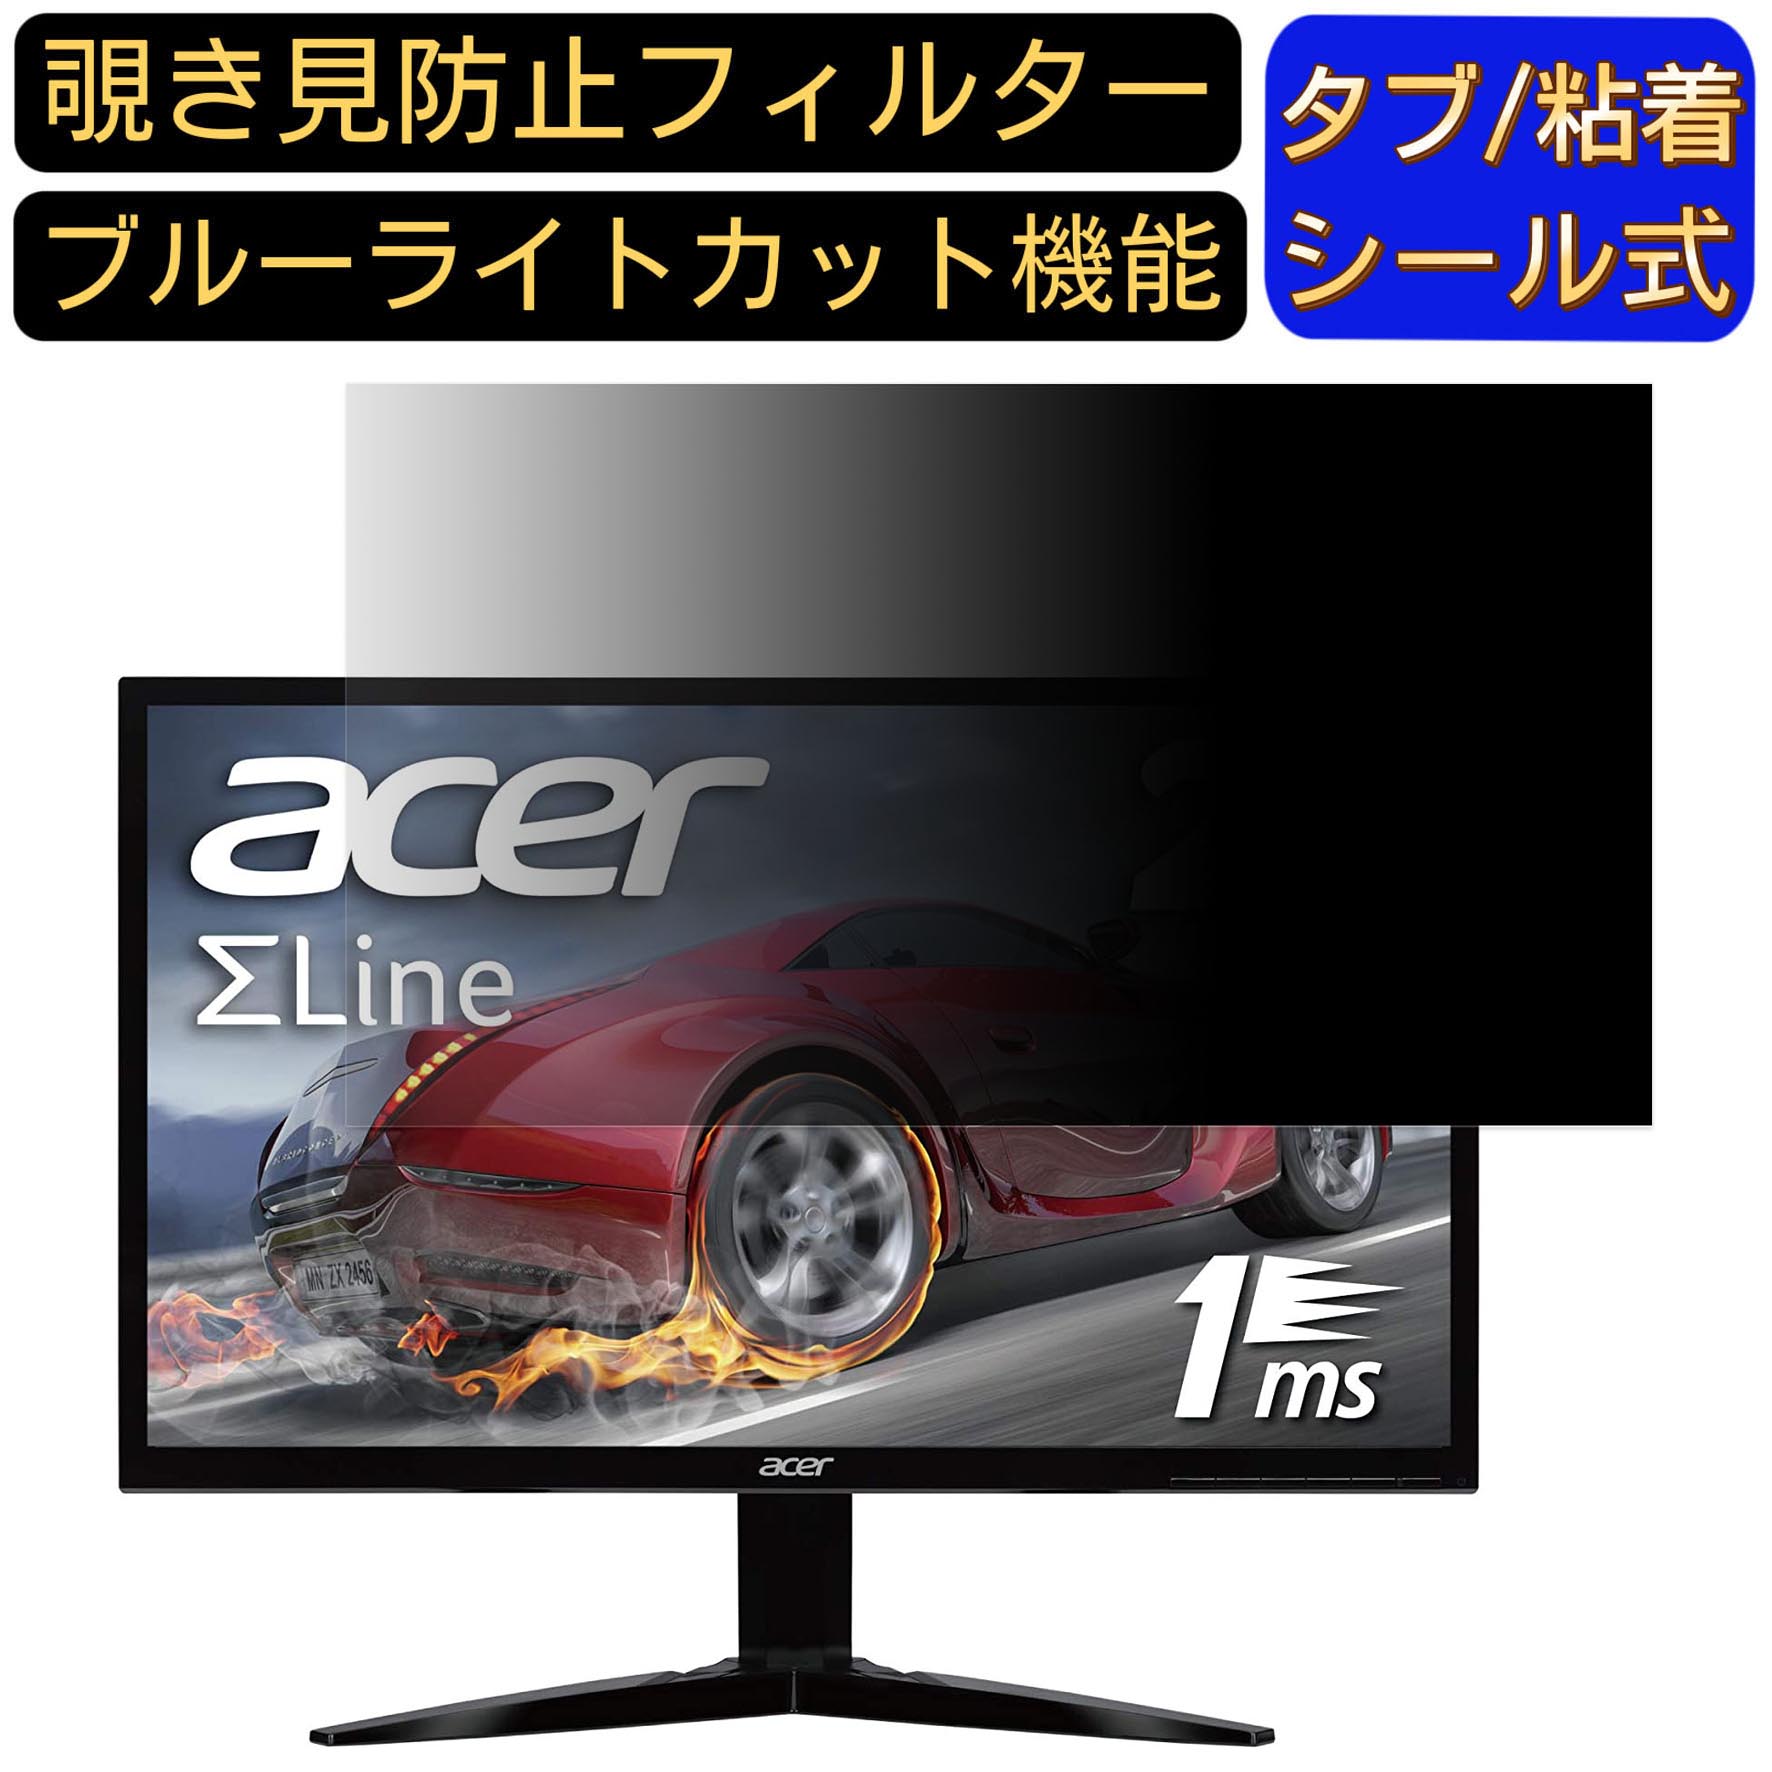 【ポイント2倍】Acer KG241bmiix (KG1) 向